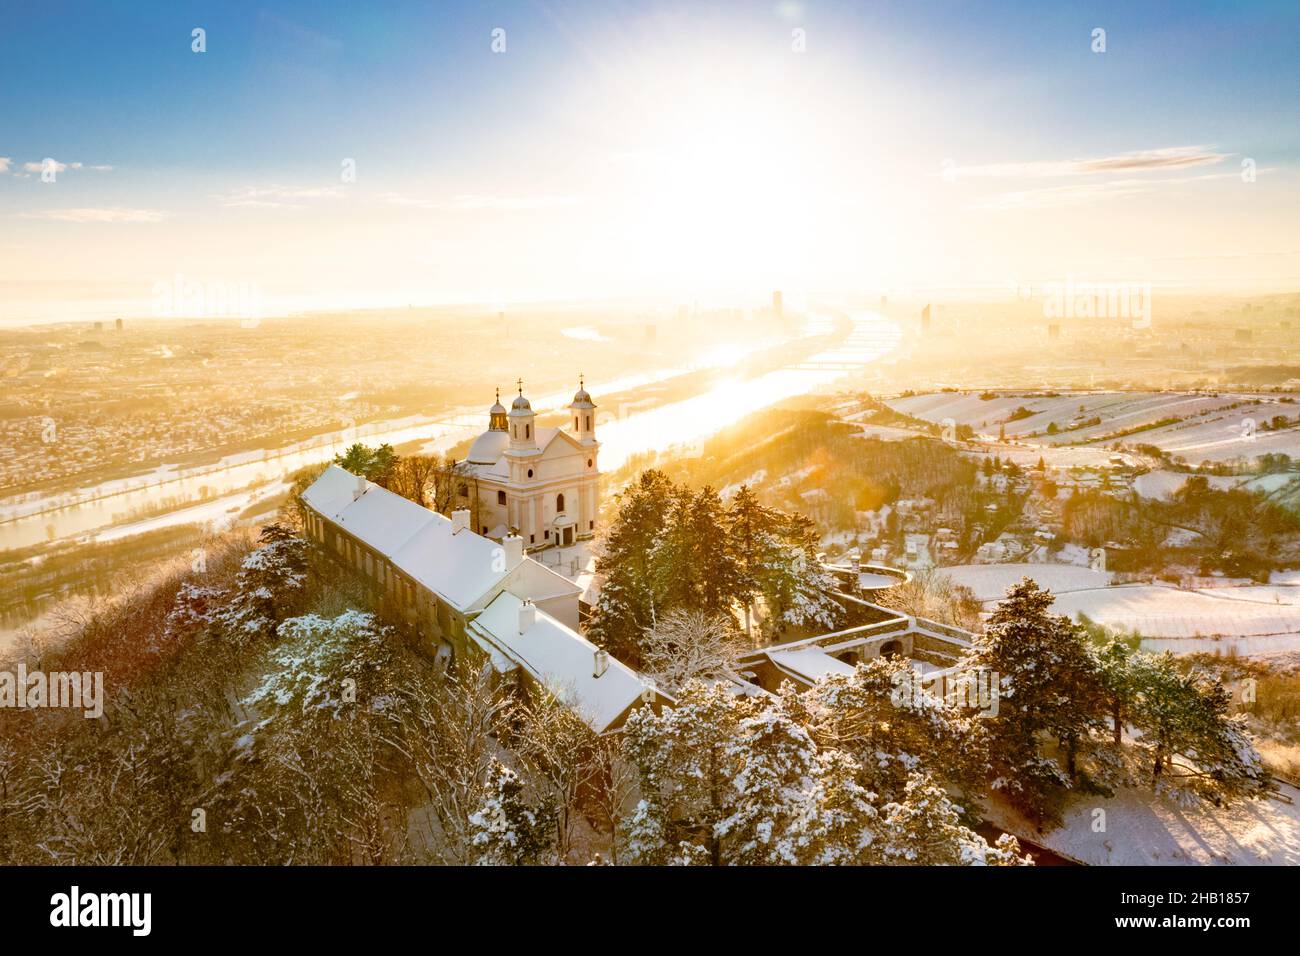 Wien, Hauptstadt von Österreich.Leopoldsberg im Wienerwald mit Schnee im Winter.Luftbild zur Stadt und Donau. Banque D'Images